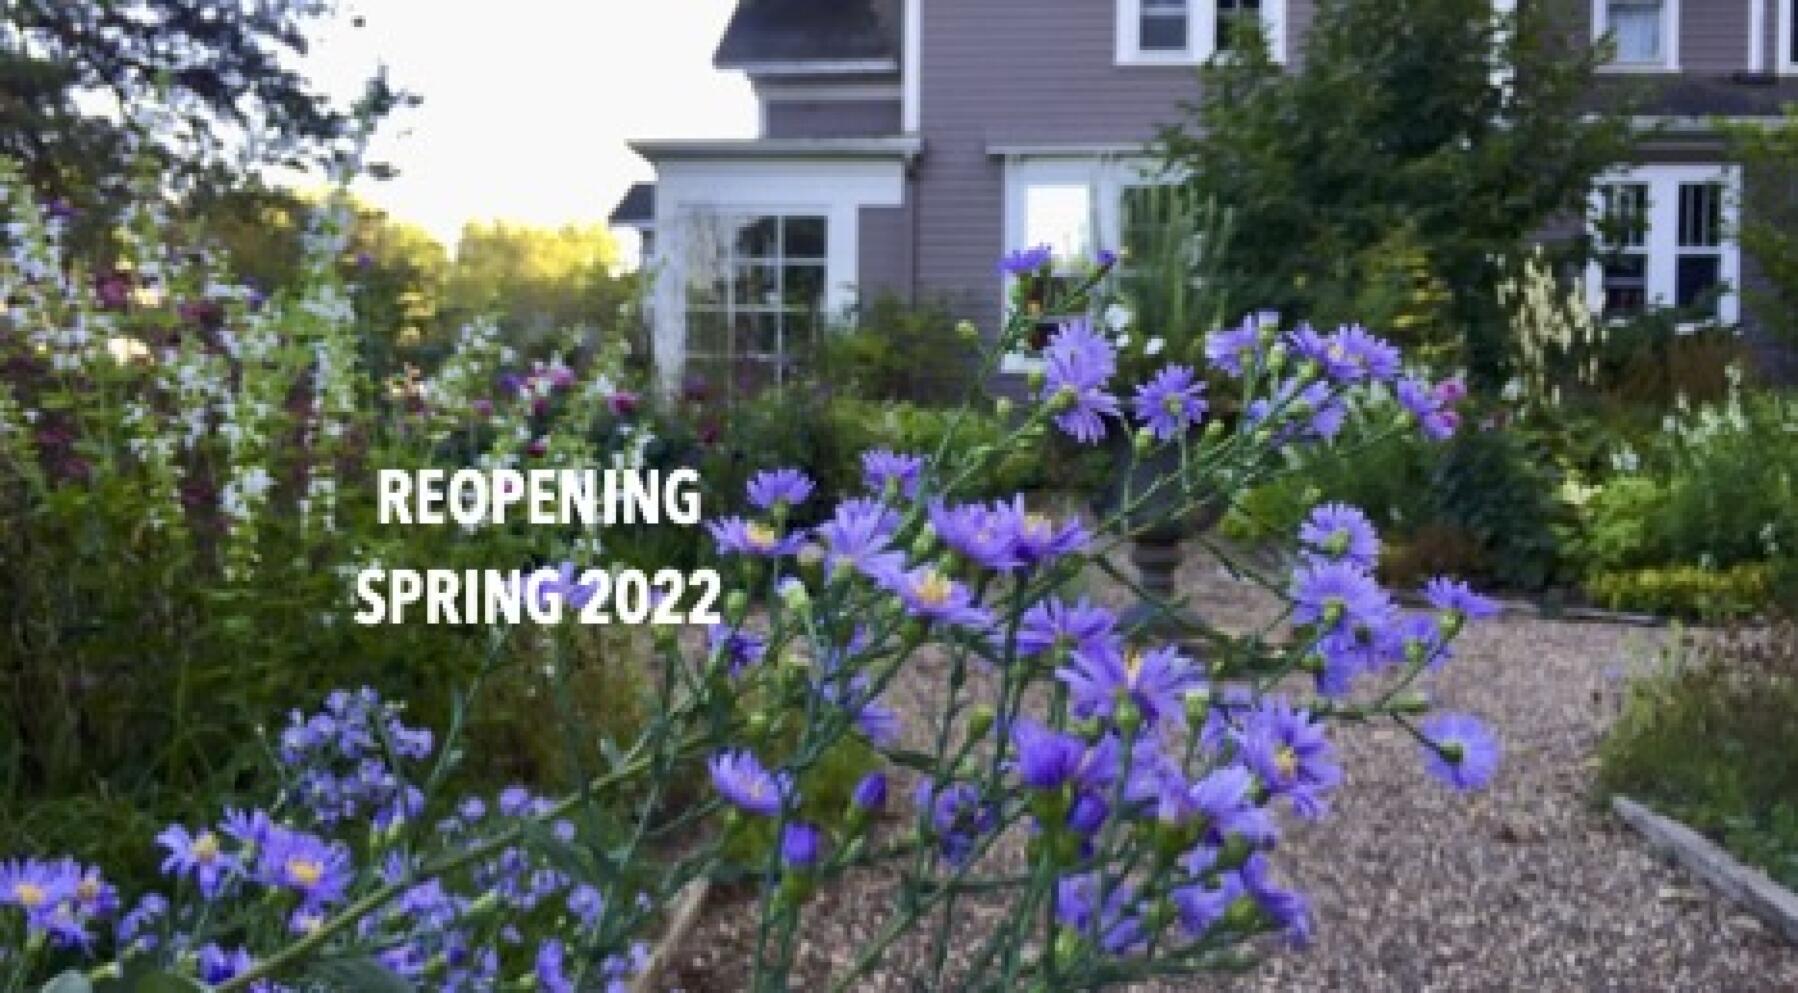 Reopening Spring 2022